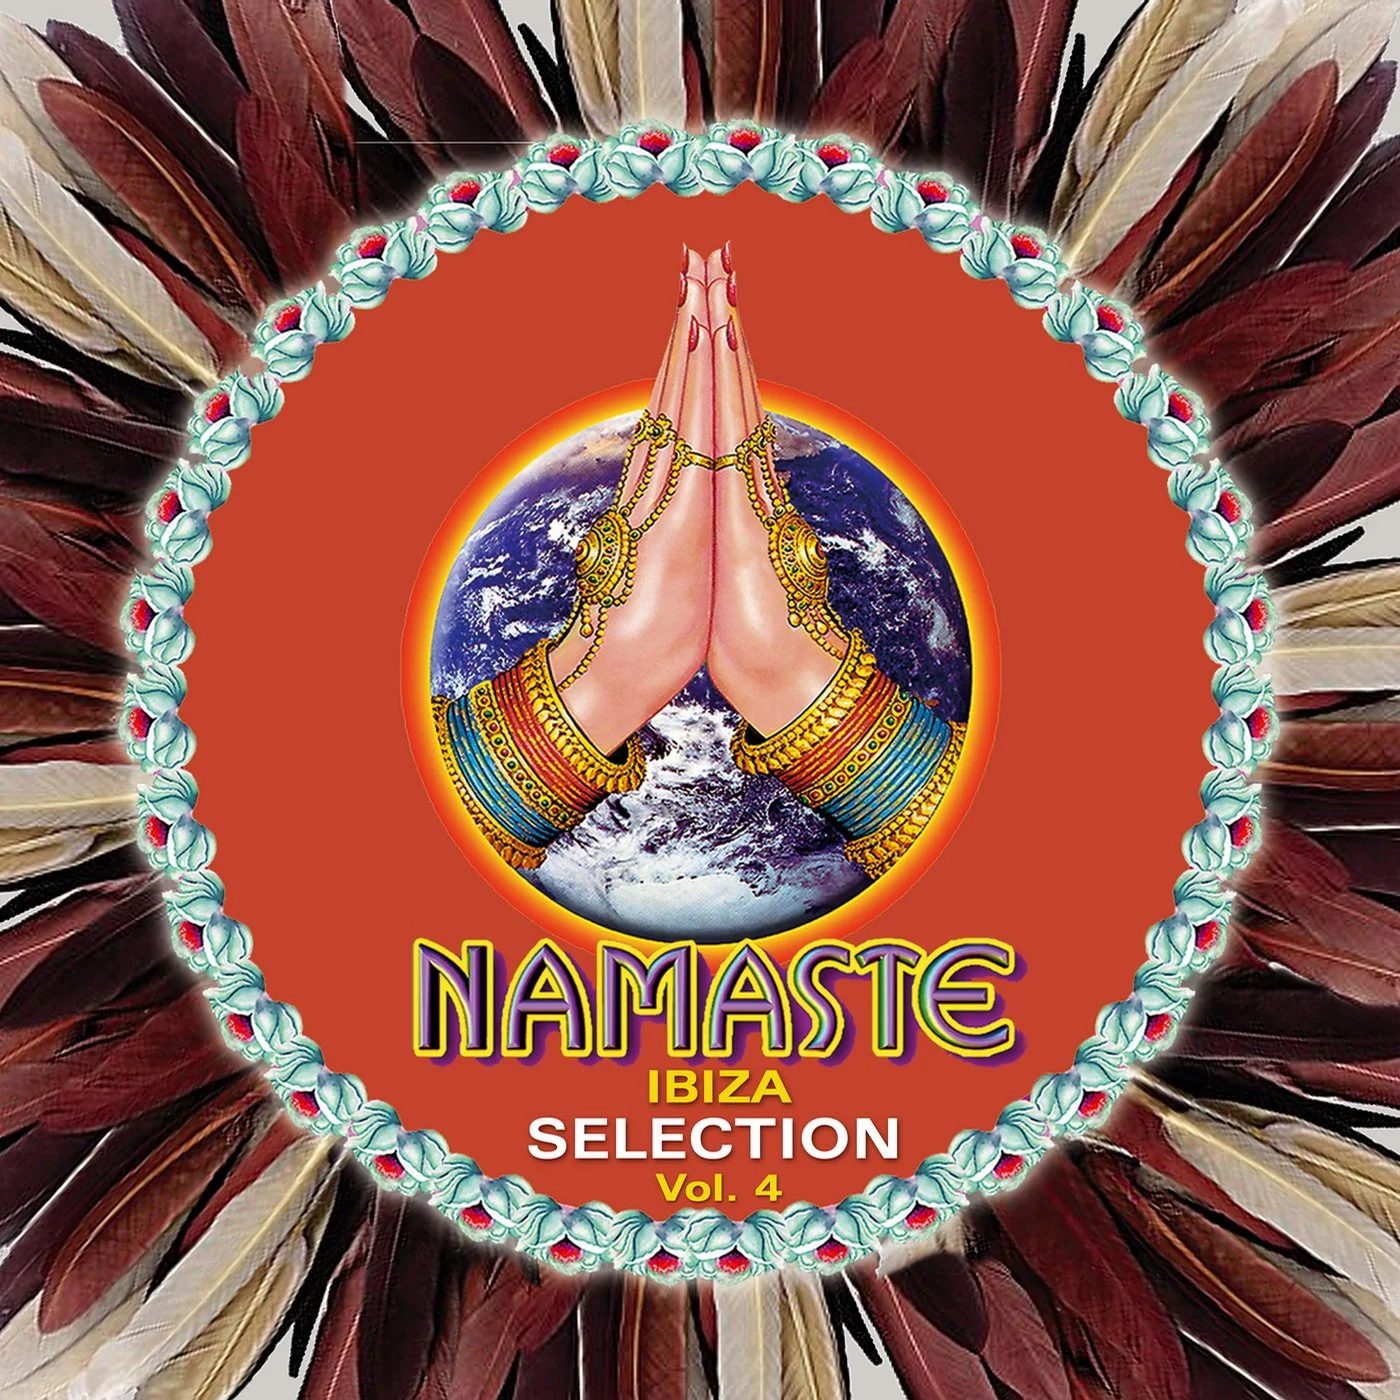 Cover von Compilation "Namaste Ibiza Selection, Vol. 4>"